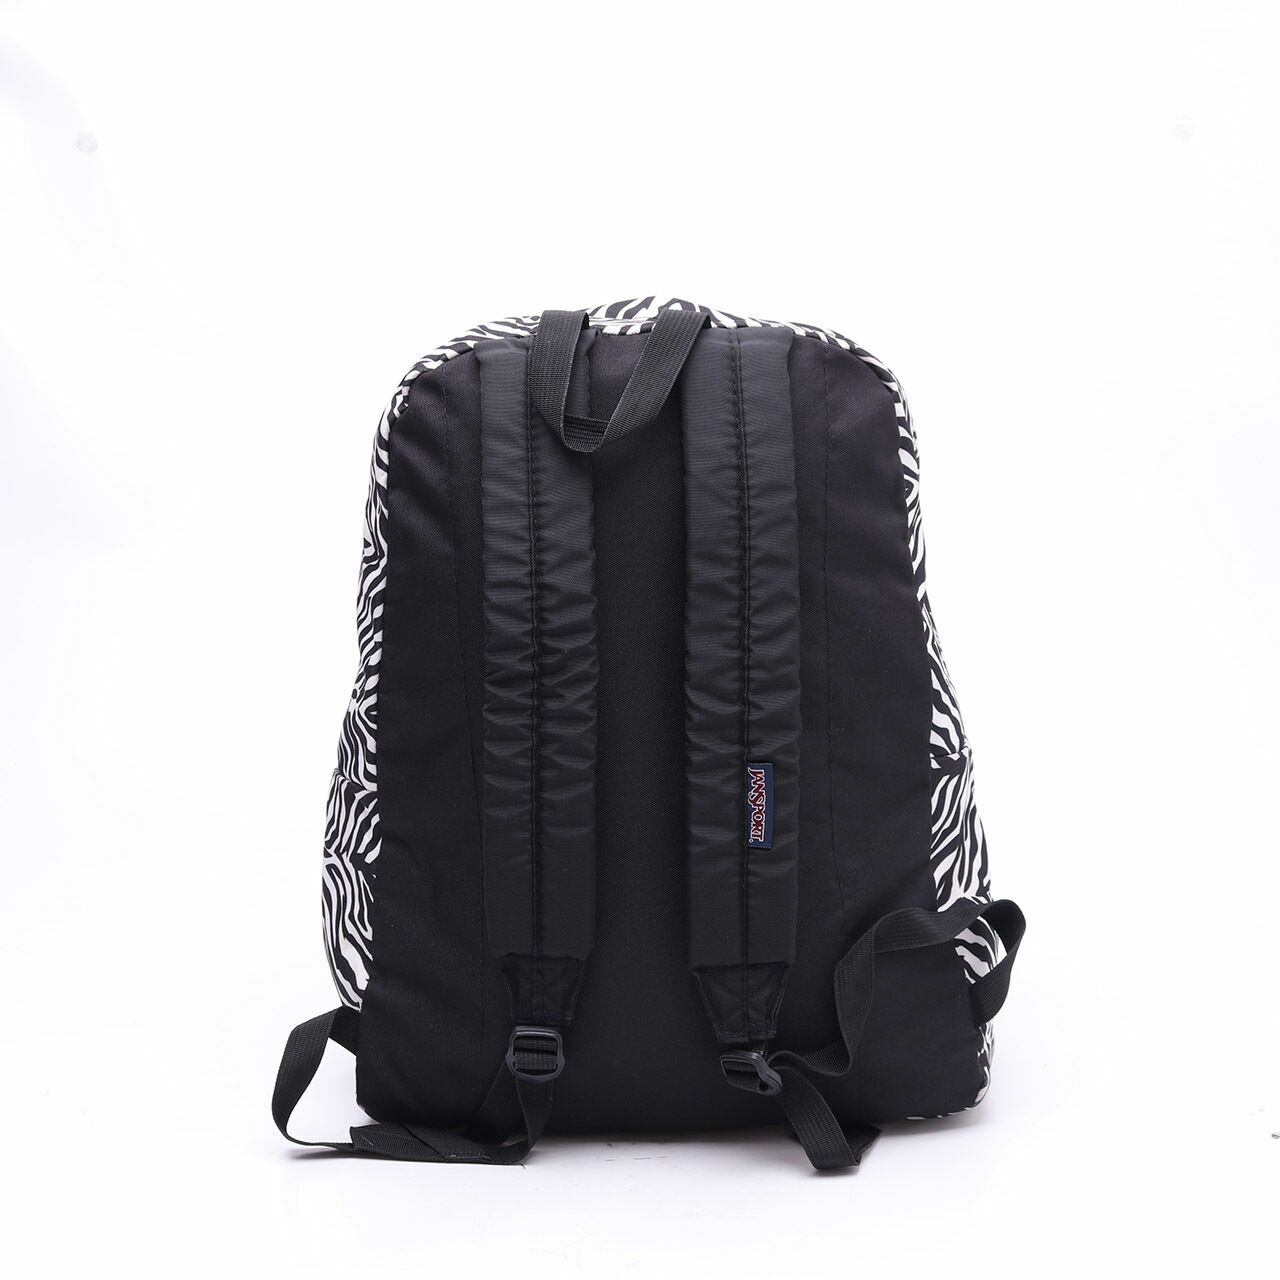 Jansport Black & White Backpack